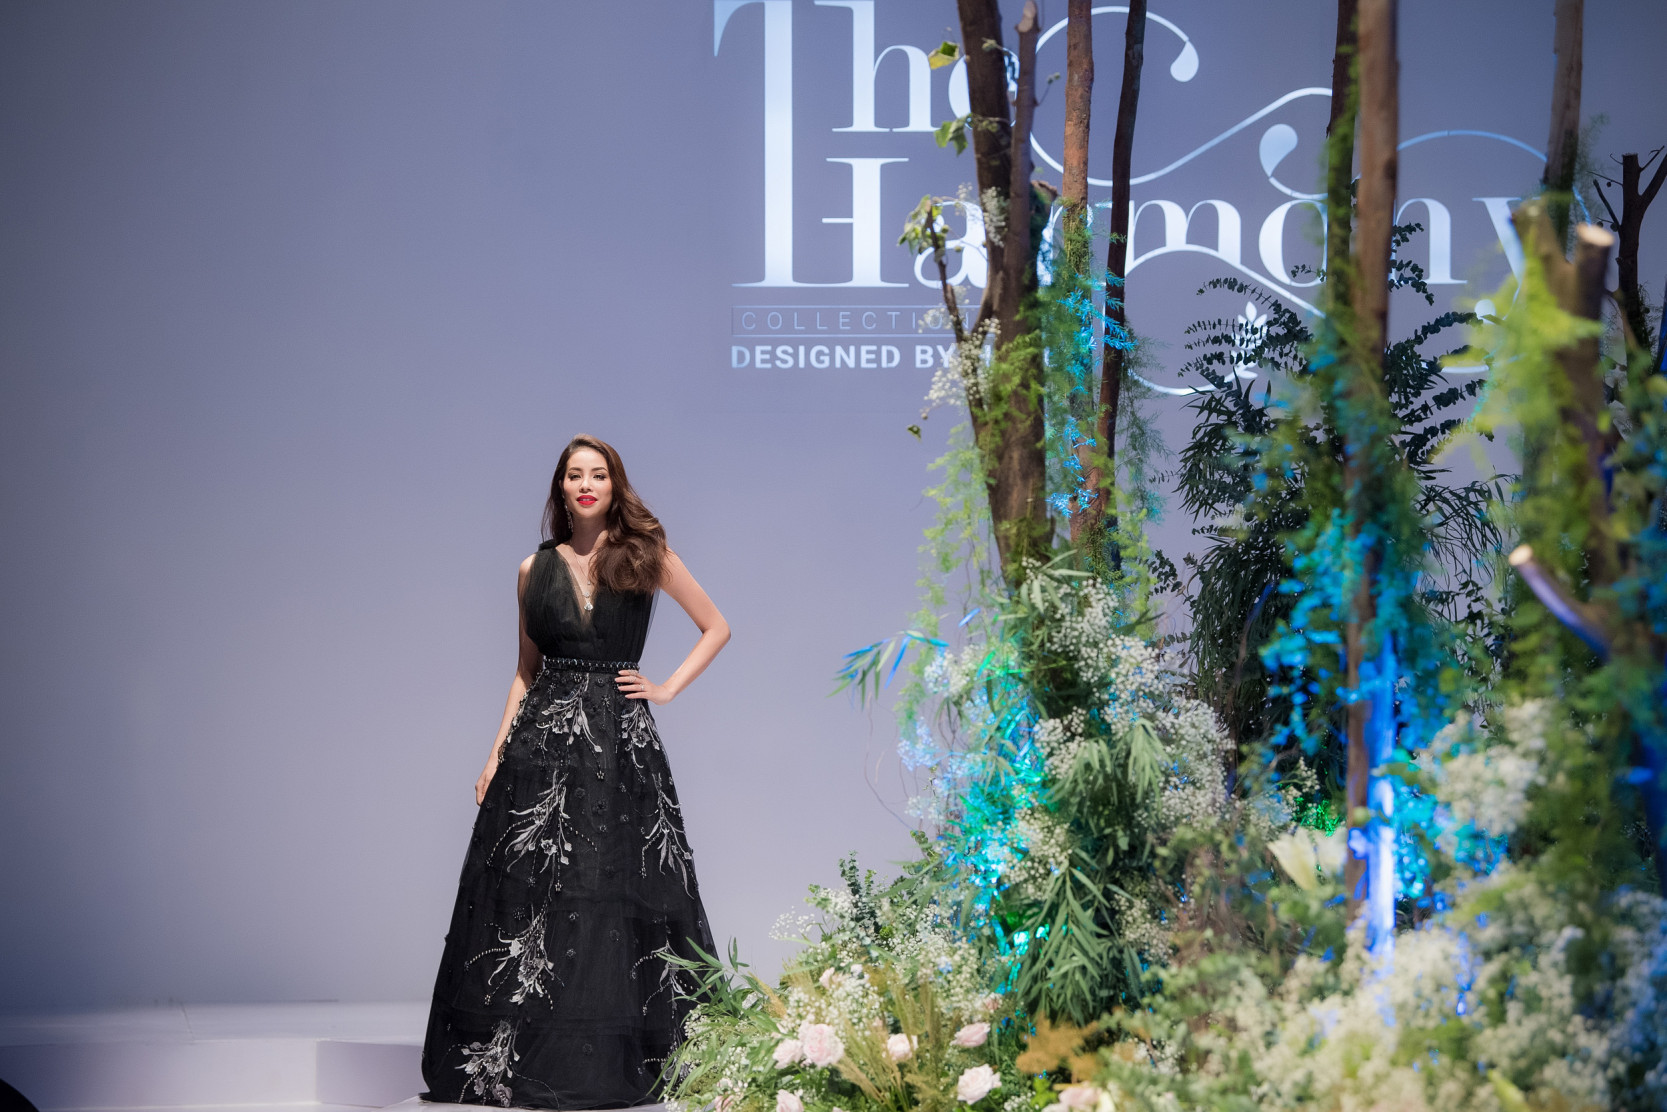 Ở phần này, Hoa hậu Phạm Hương đảm nhận vị trí vedette với bộ đầm màu đen huyền bí và được đính đá cầu kỳ. 